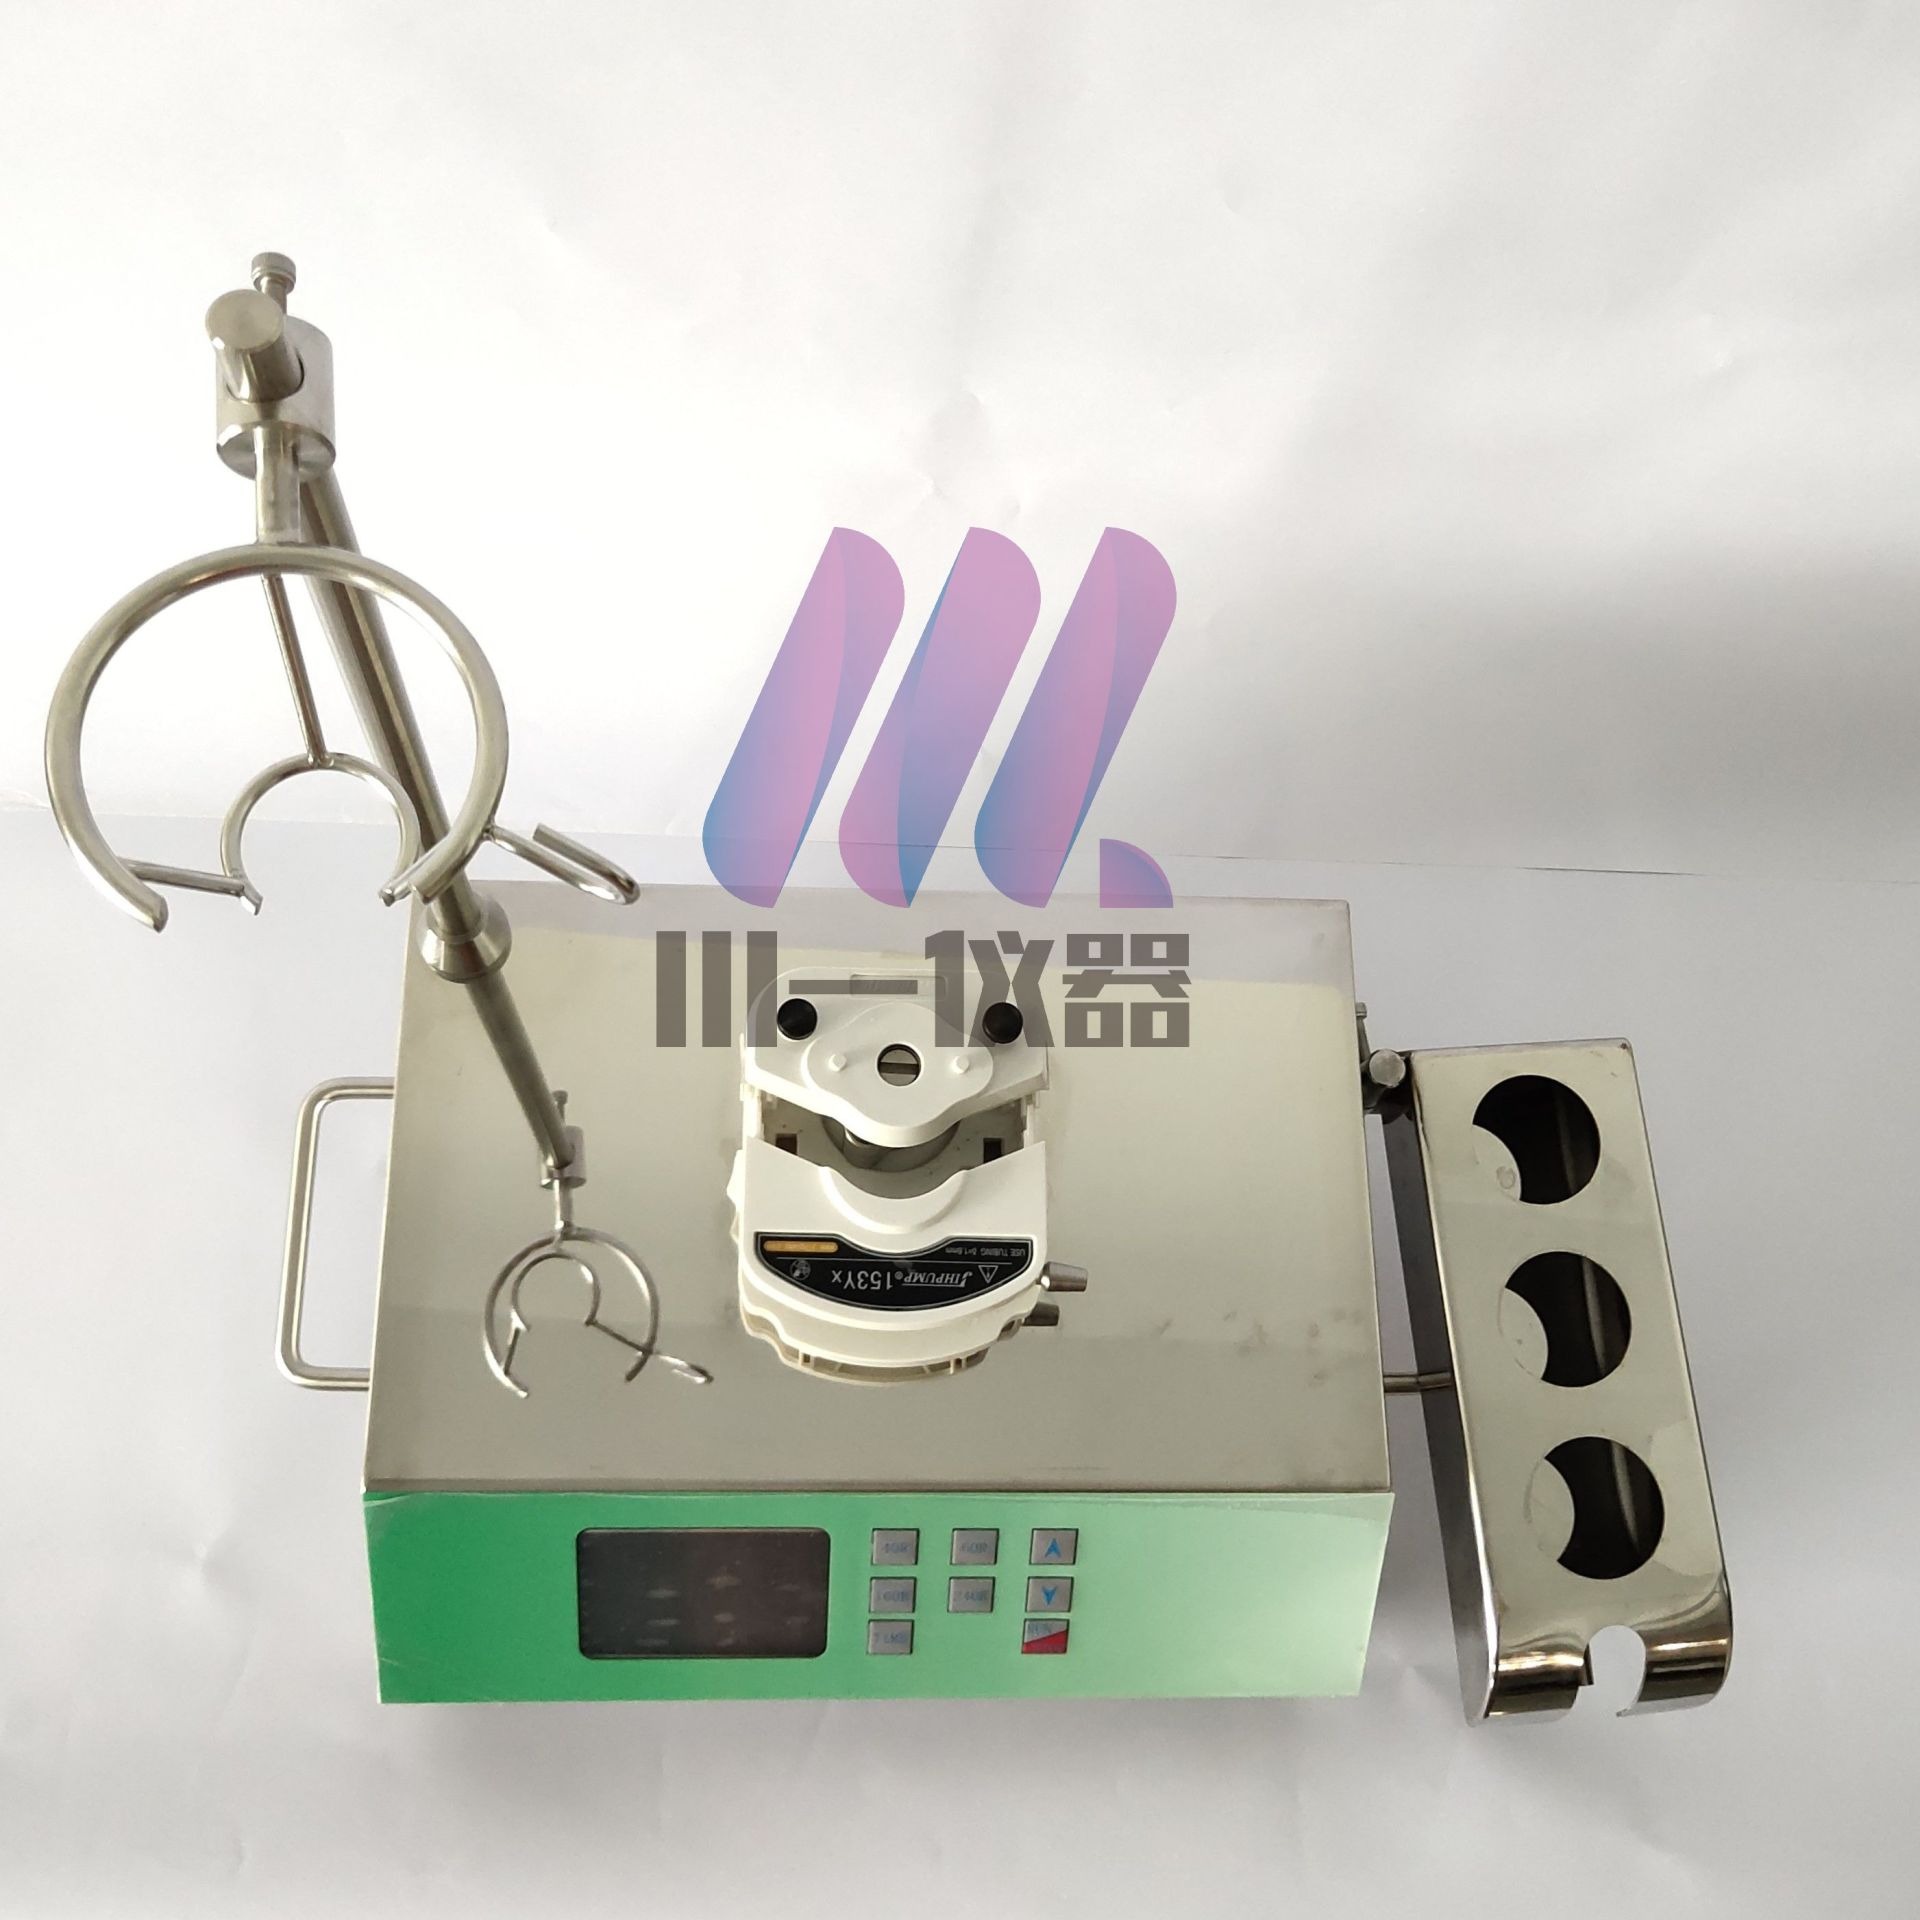 重庆全不锈钢机箱集菌仪JPX-2010薄膜过滤器川一仪器图片